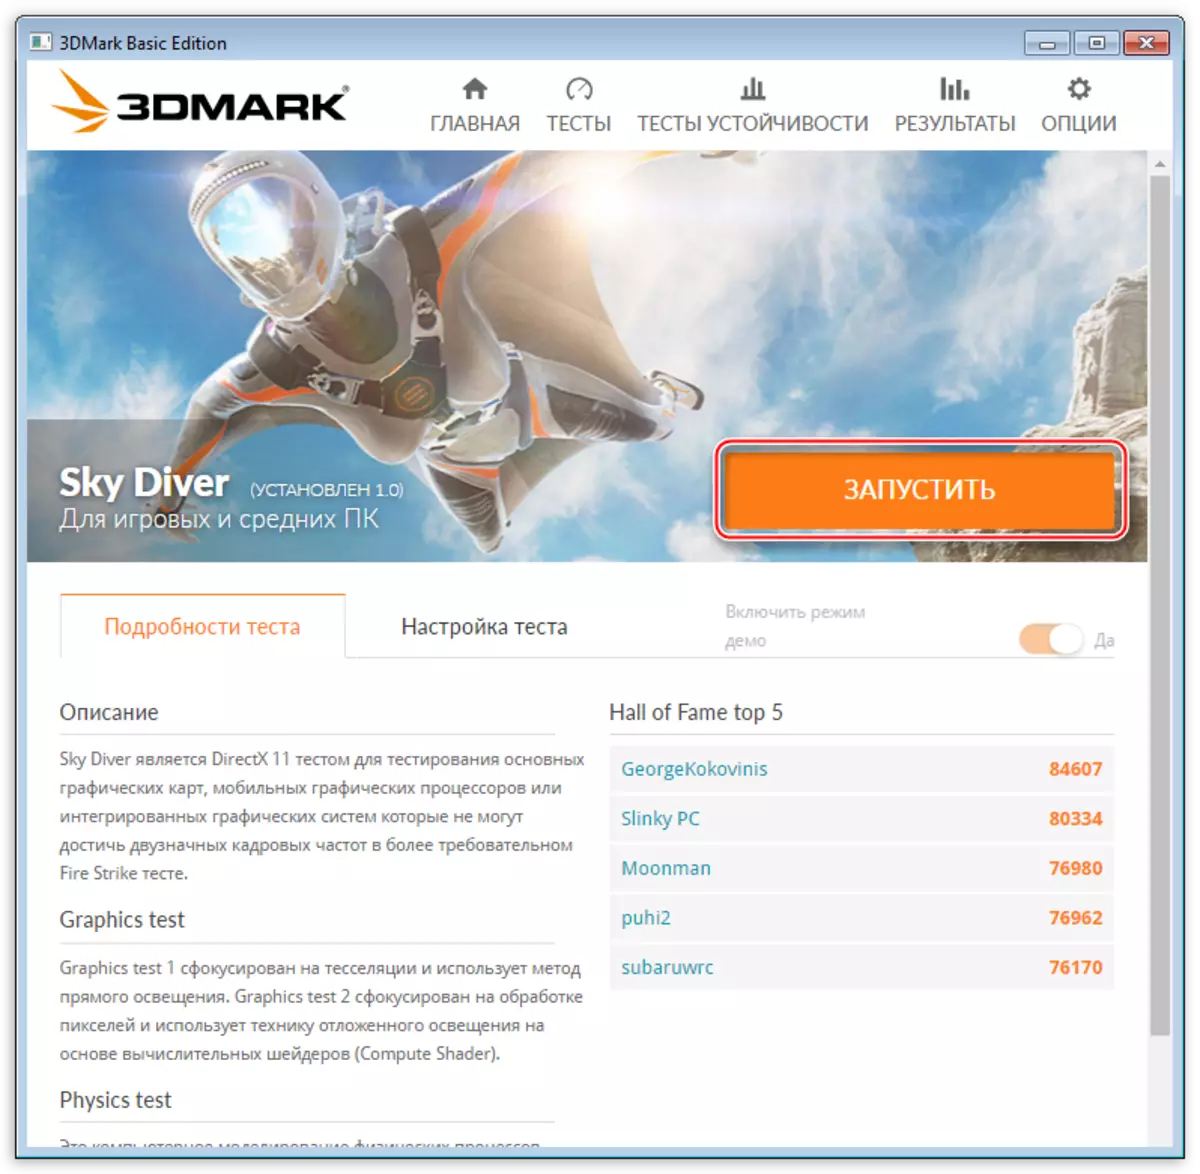 Ξεκινώντας τη δοκιμή του Diver Sky στο πρόγραμμα δοκιμής του συστήματος 3DMark από τους προγραμματιστές FutureMark